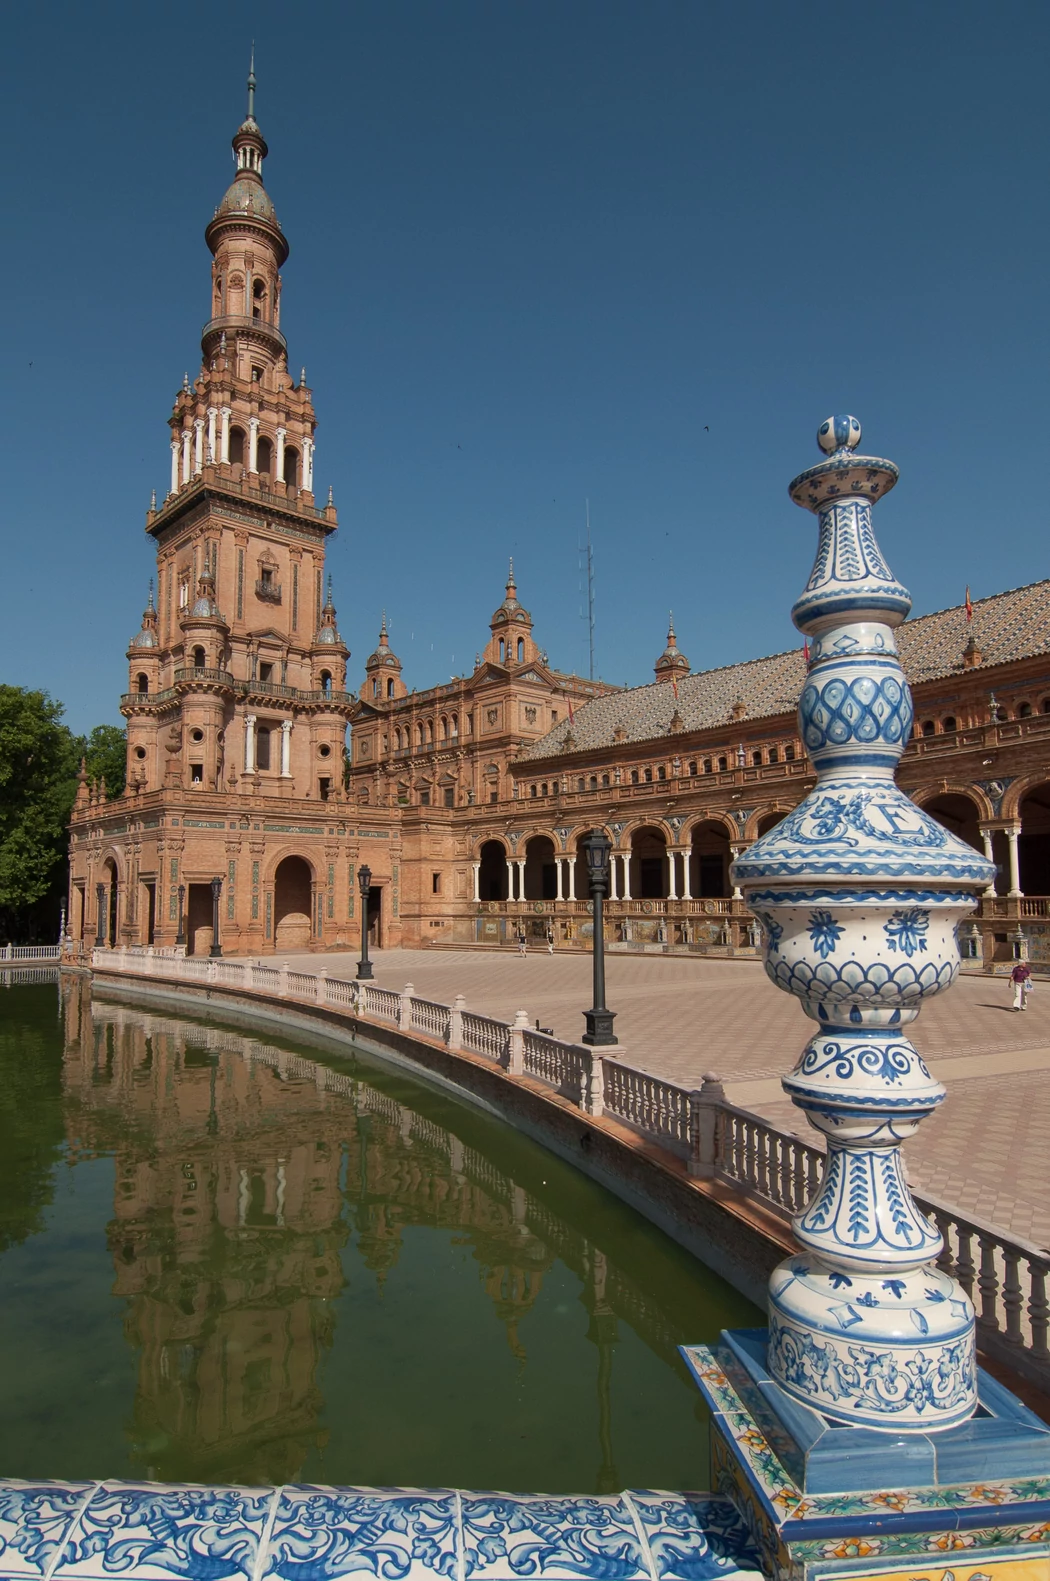 La Plaza de España de Sevilla, uno de los monumentos más impresionantes de Europa Plaza-espana-sevilla03.jpg